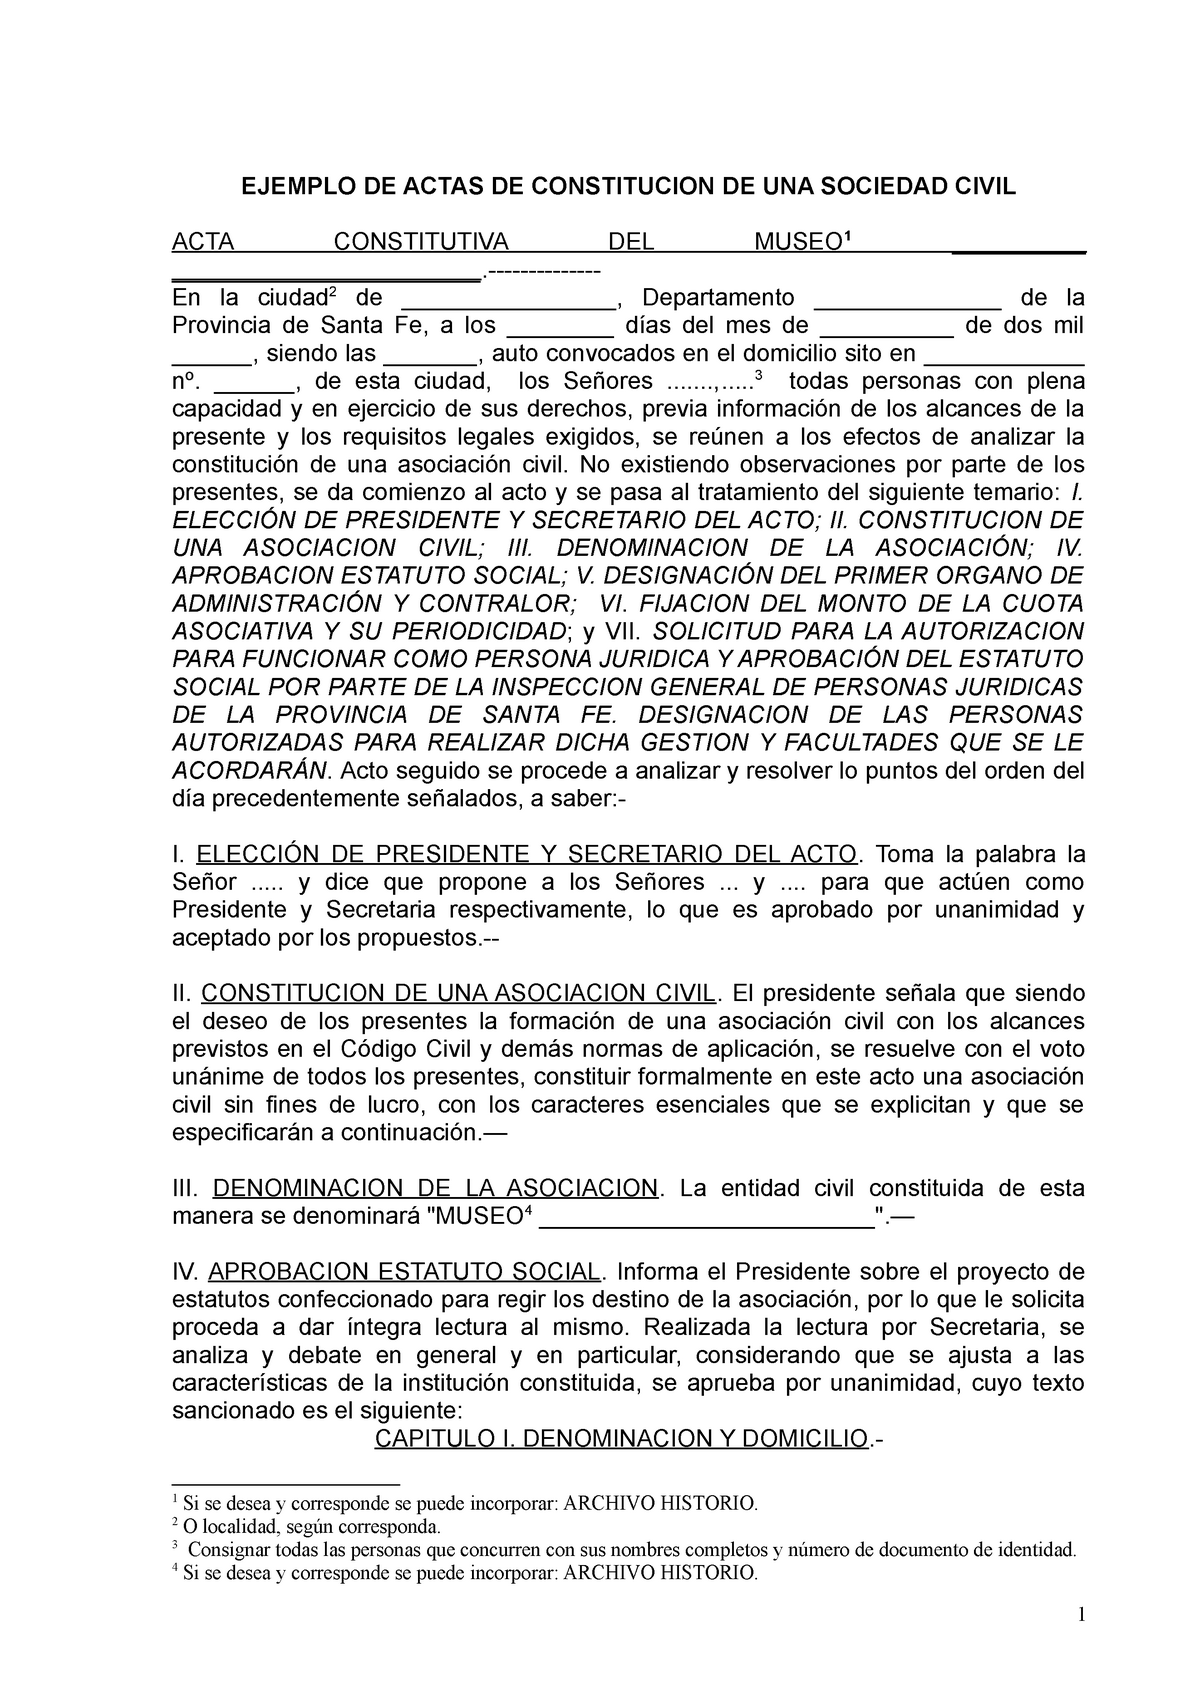 Ejemplo de acta constitutiva de una sociedad civil - EJEMPLO DE ACTAS DE  CONSTITUCION DE UNA - Studocu